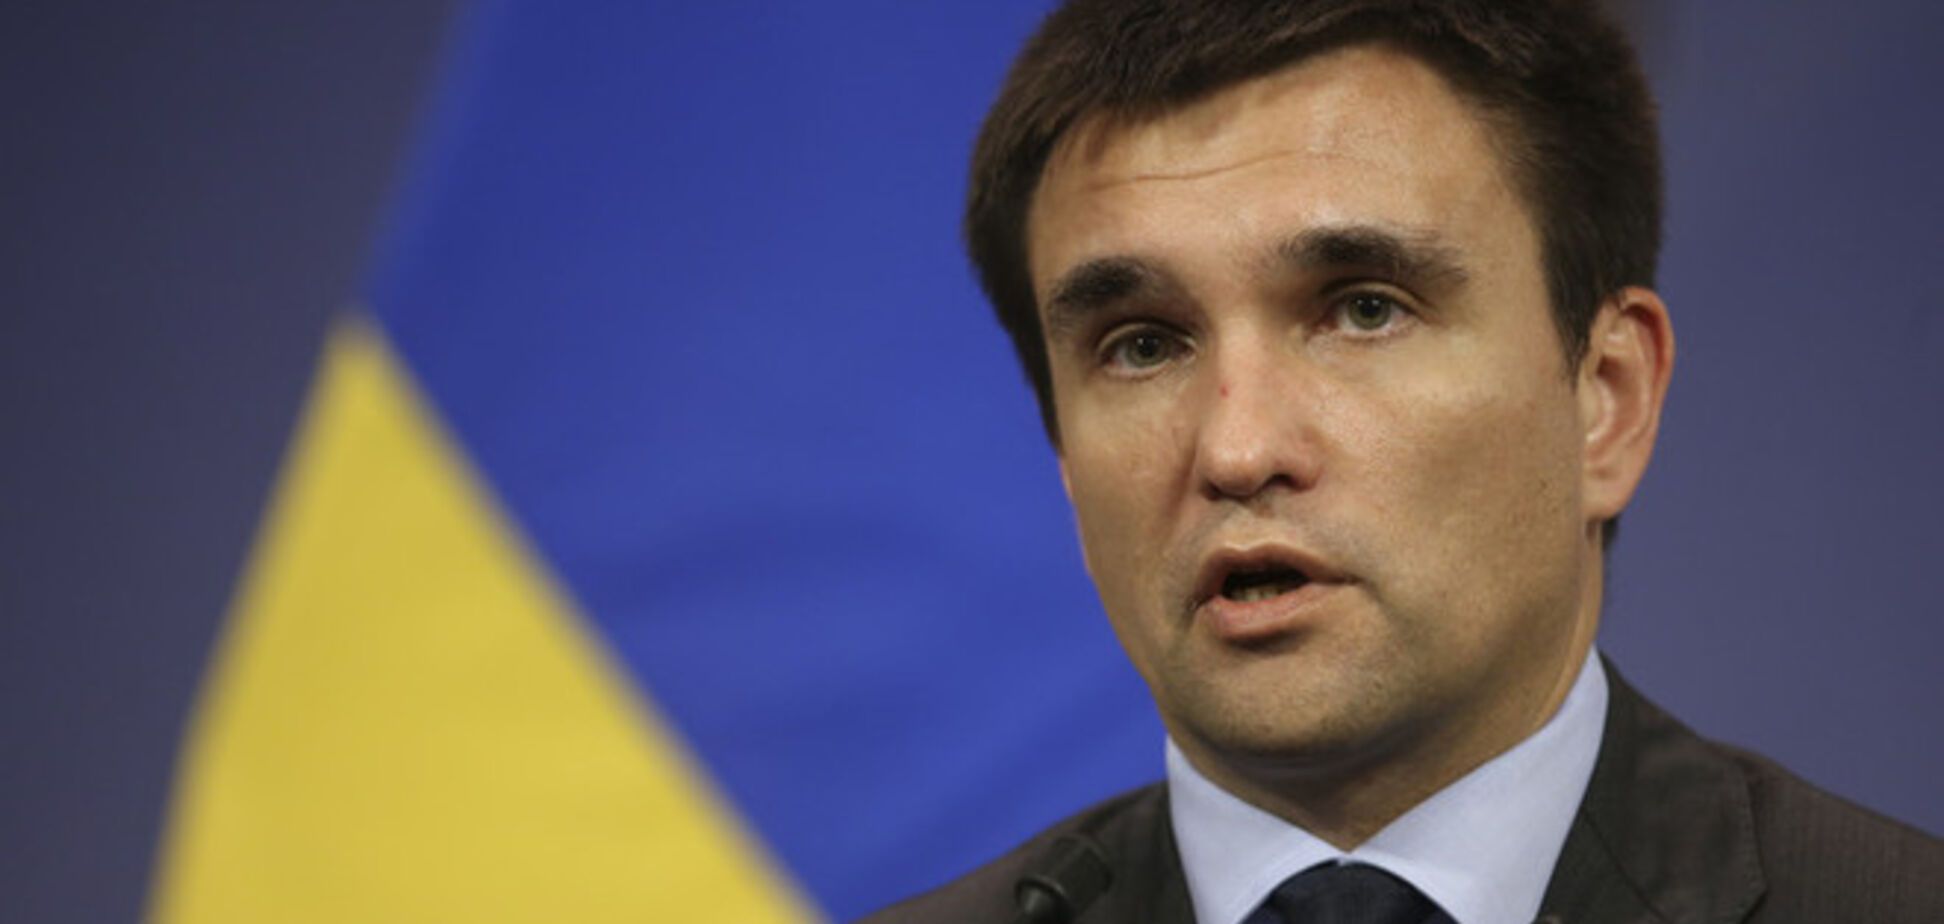 Украина настаивает на двухстороннем прекращении огня - Климкин